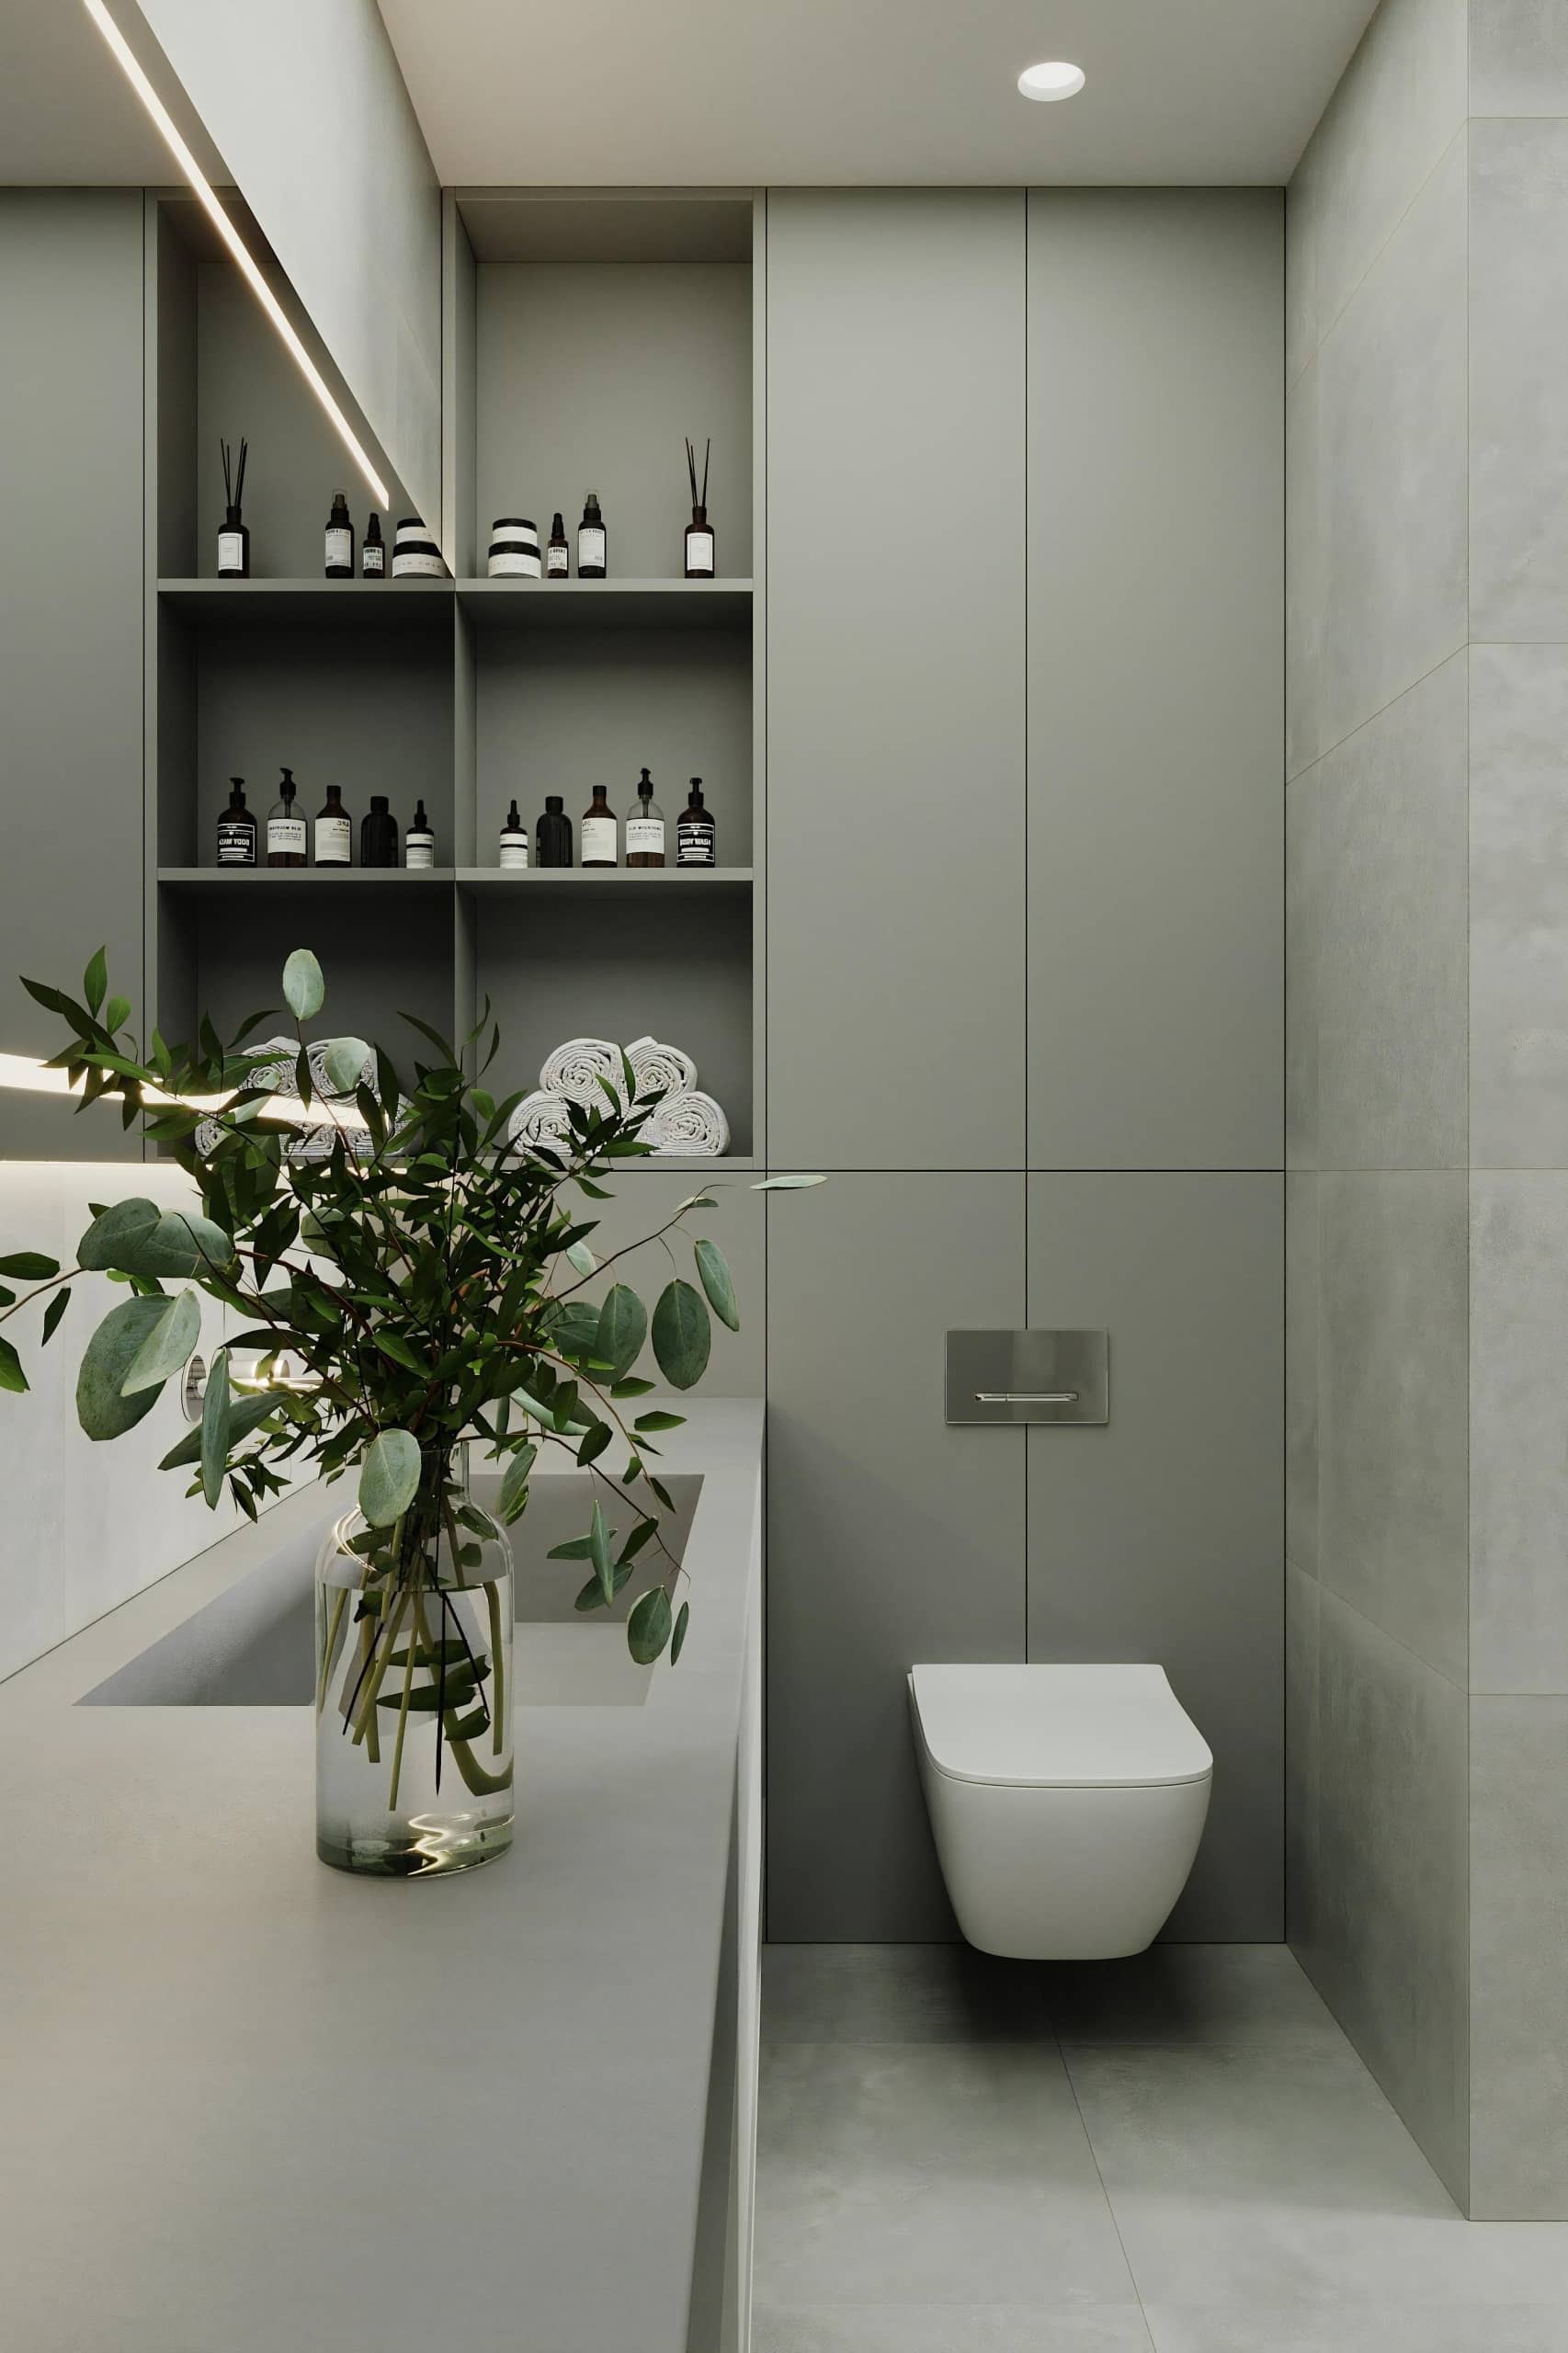 Оформление интерьера ванной комнаты в белый цвет. Фото № 72126.